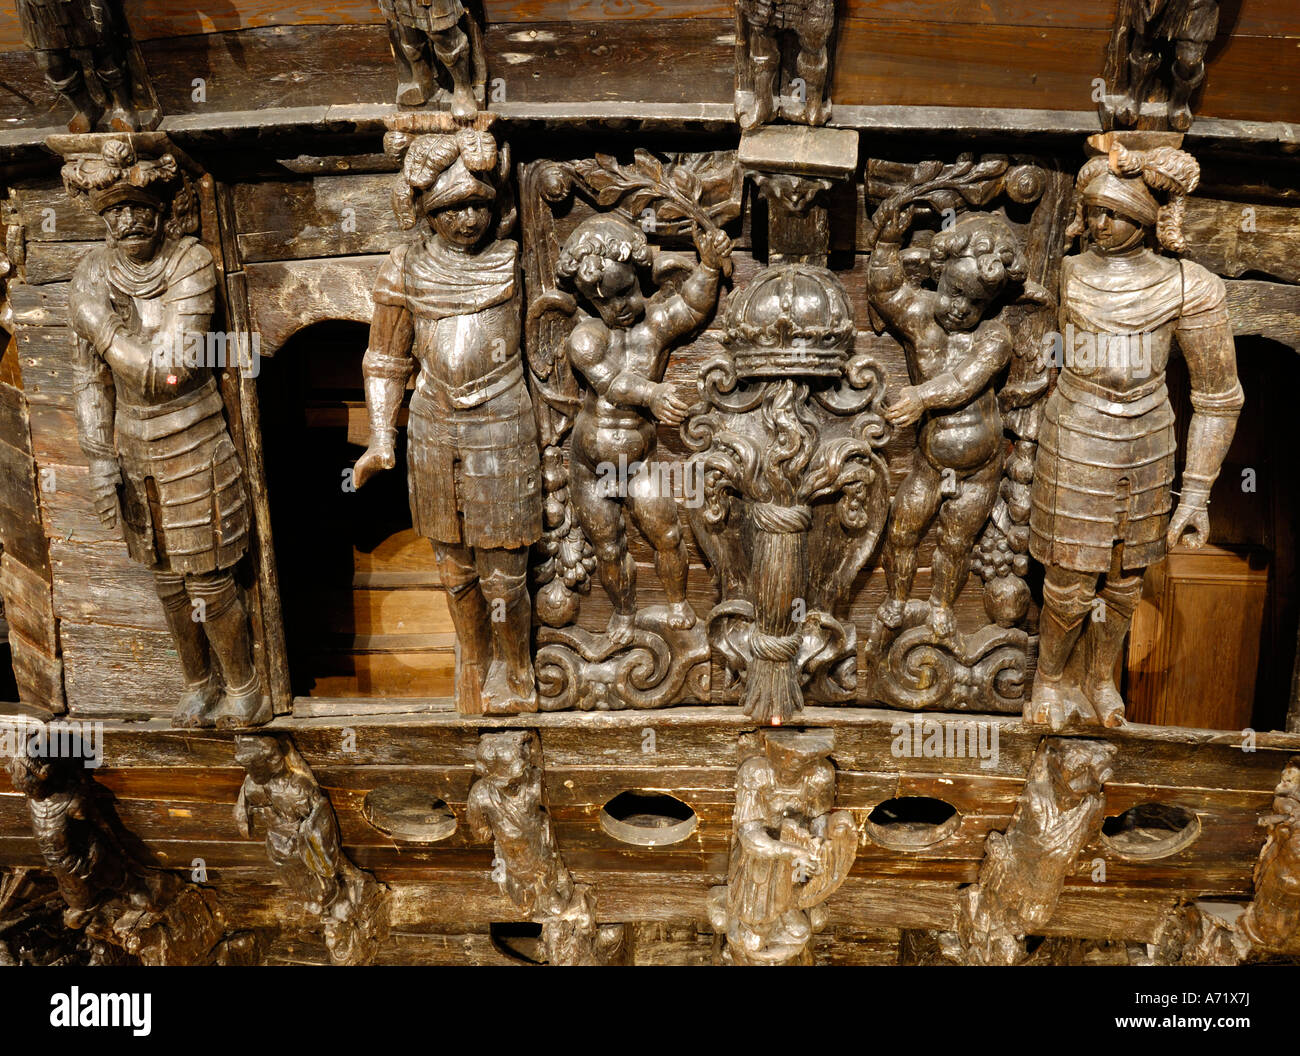 Les sculptures en bois à l'arrière du cuirassé du 17e siècle au musée Vasa Vasa à Stockholm, Suède Banque D'Images